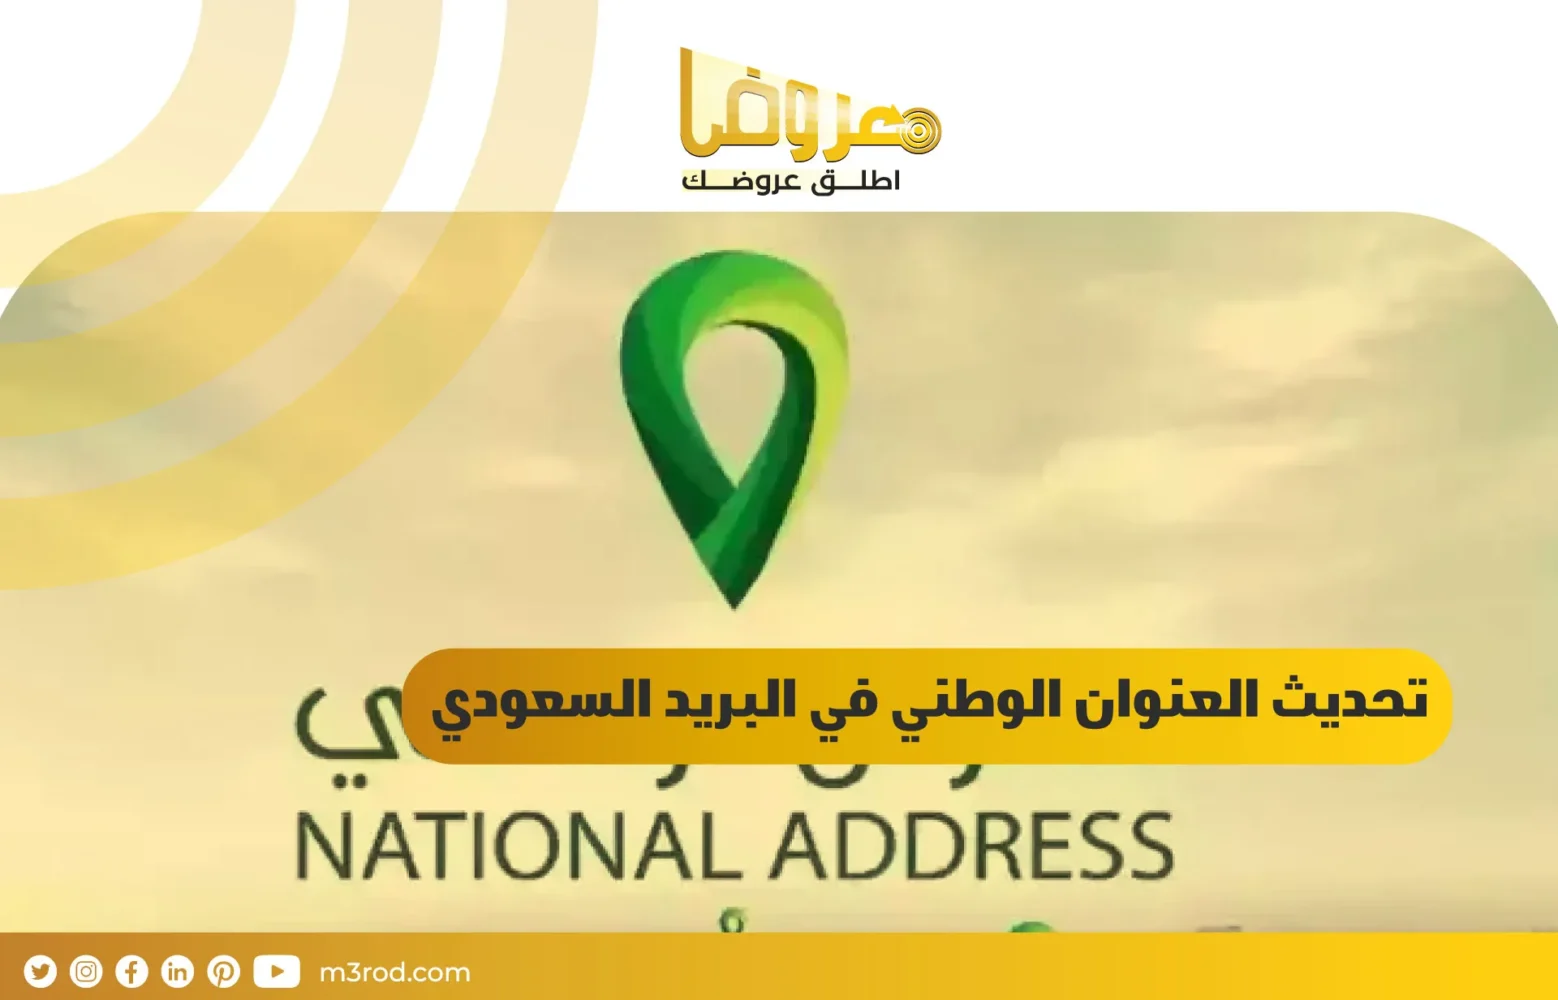 تحديث العنوان الوطني في البريد السعودي